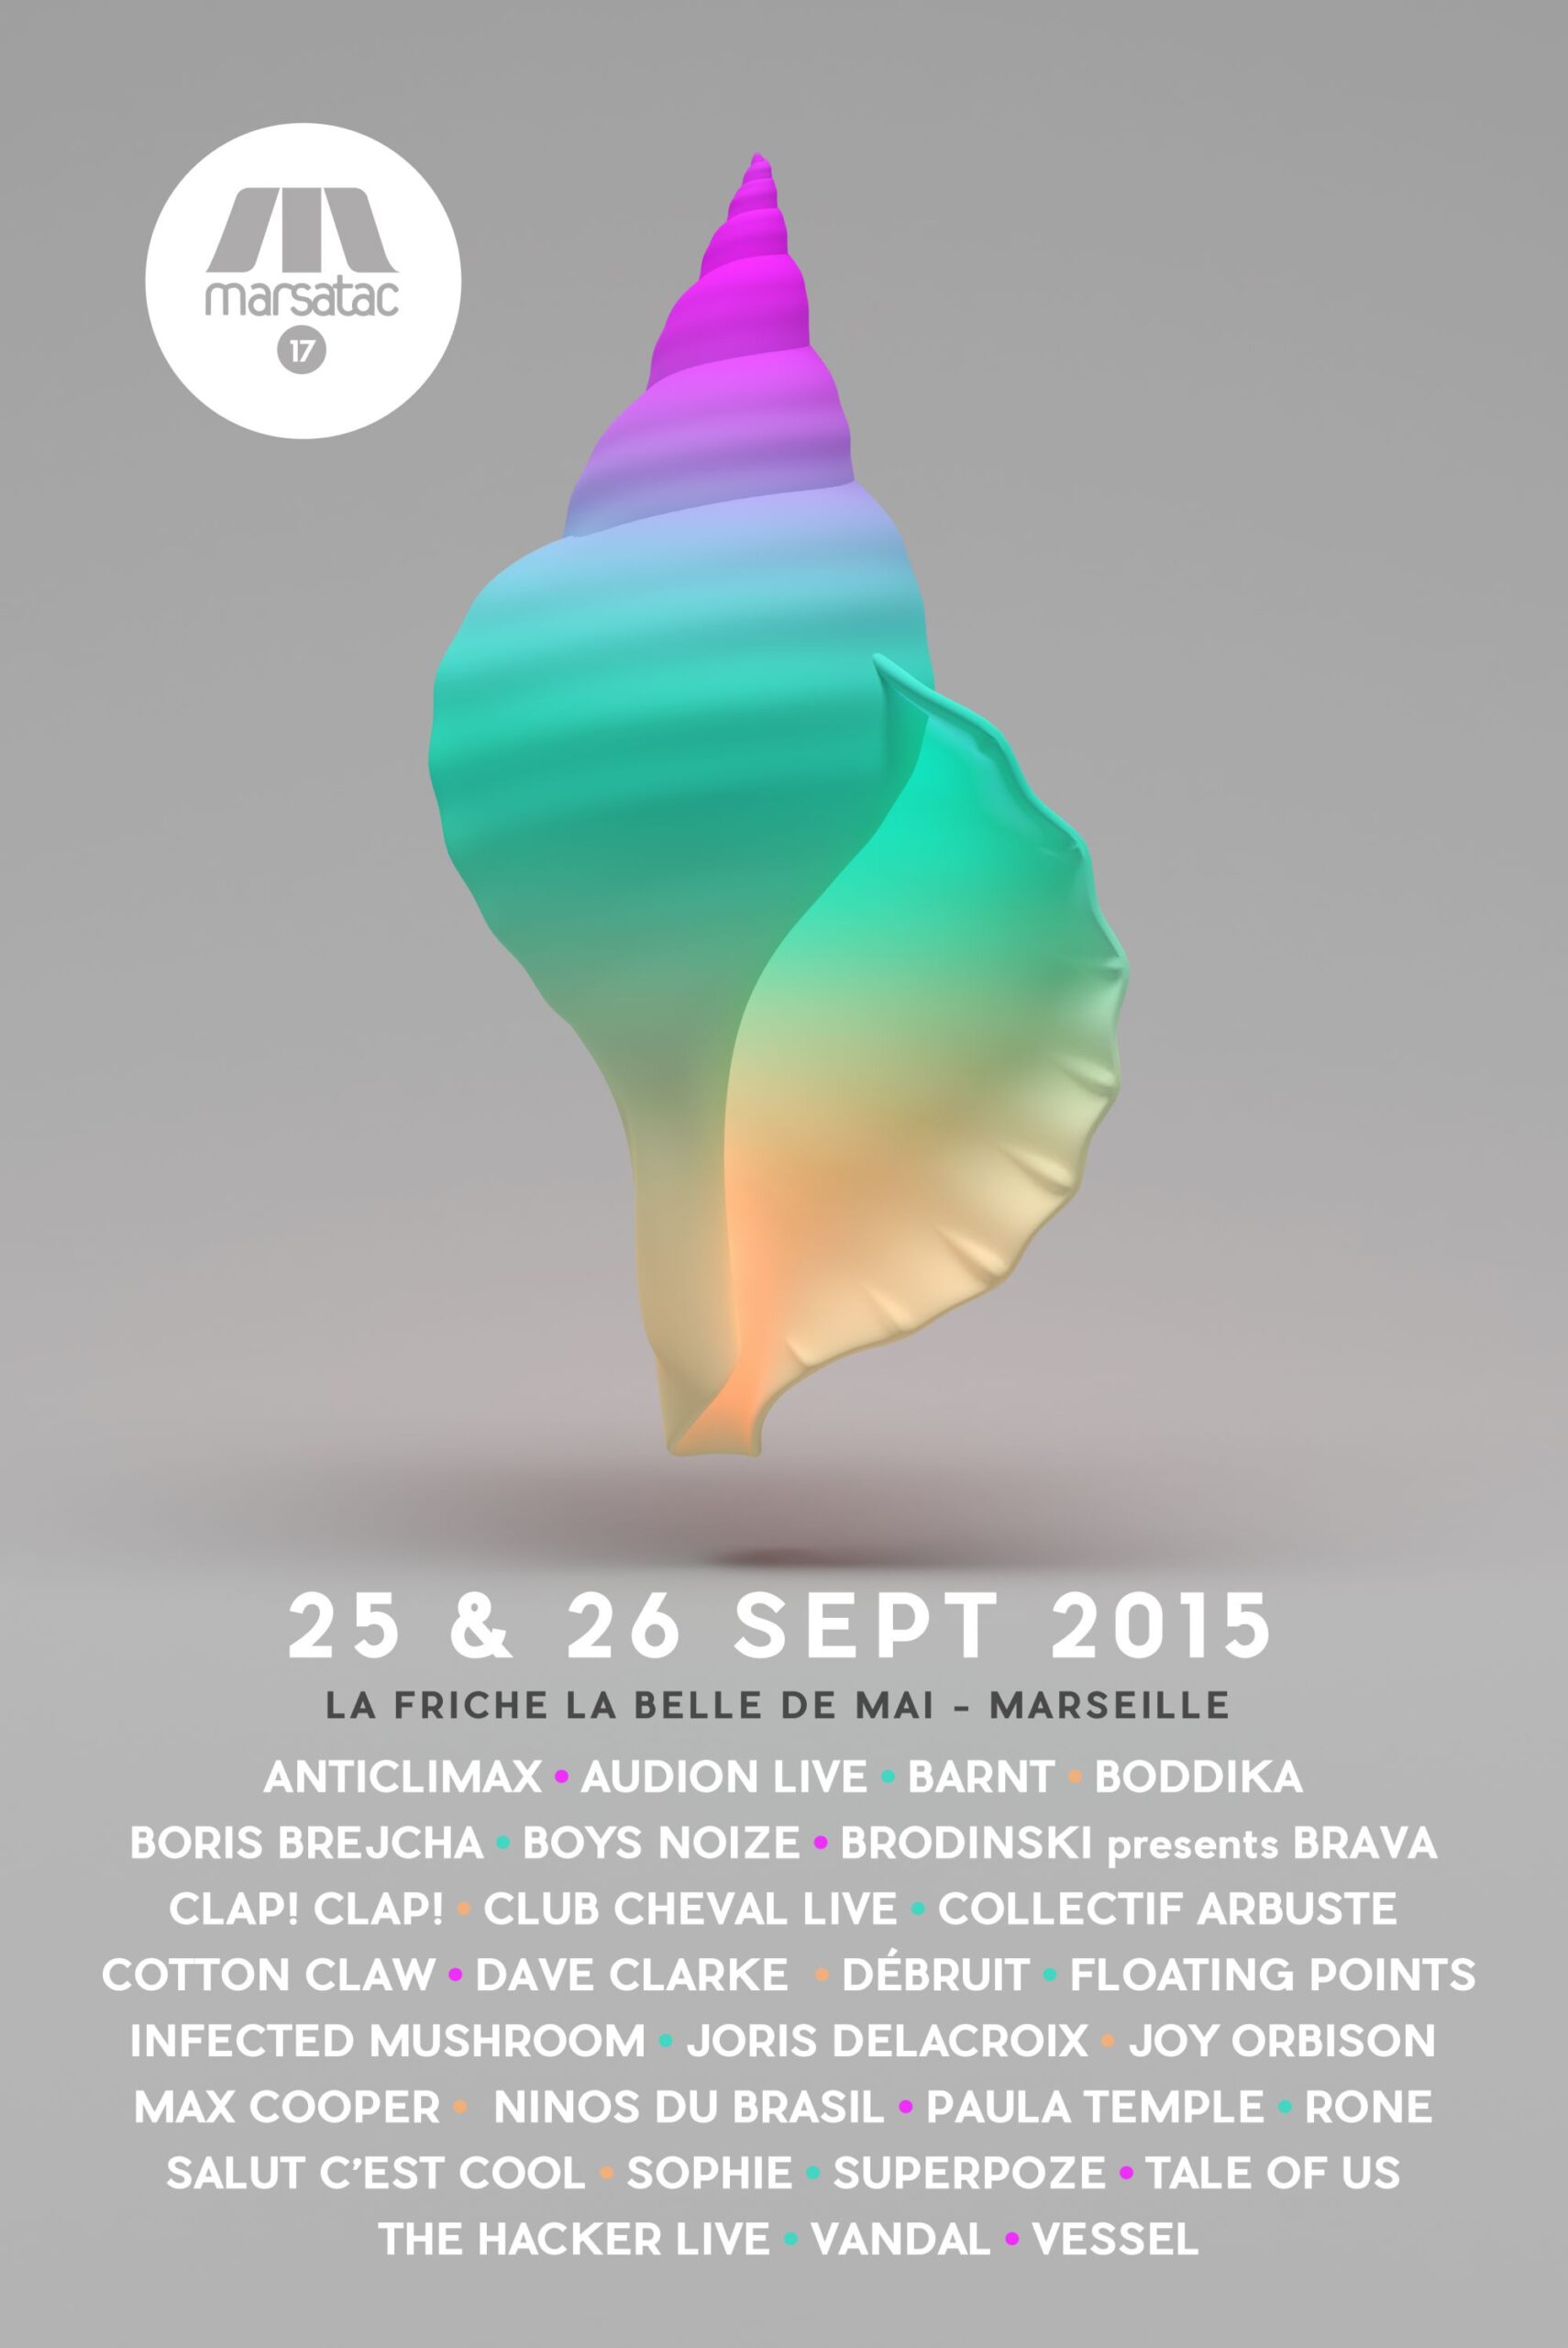 Le festival Marsatac 2015 les 25 et 26 septembre 2015 à La Friche la Belle de Mai à Marseille